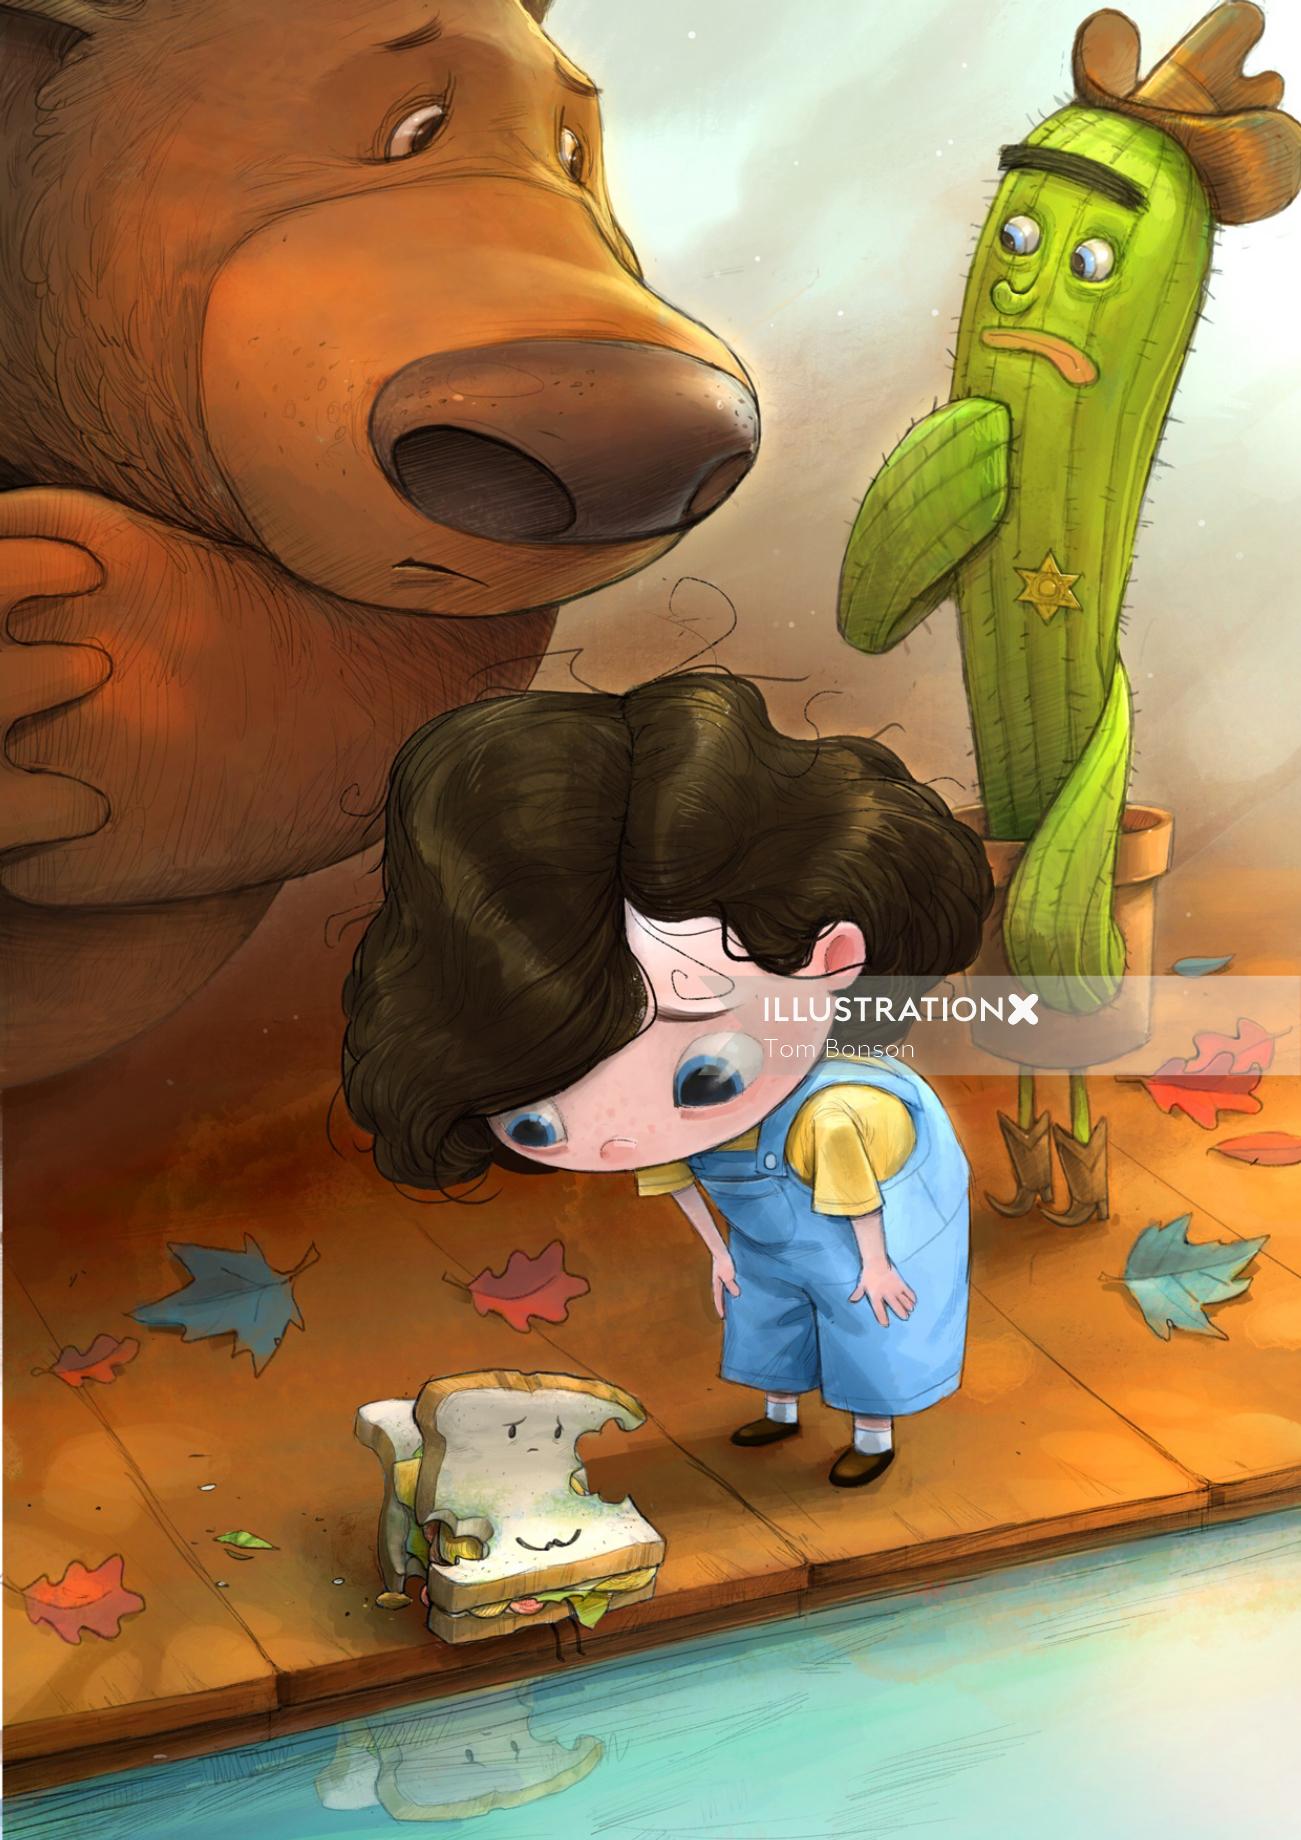 Children illustration of bear and girl
